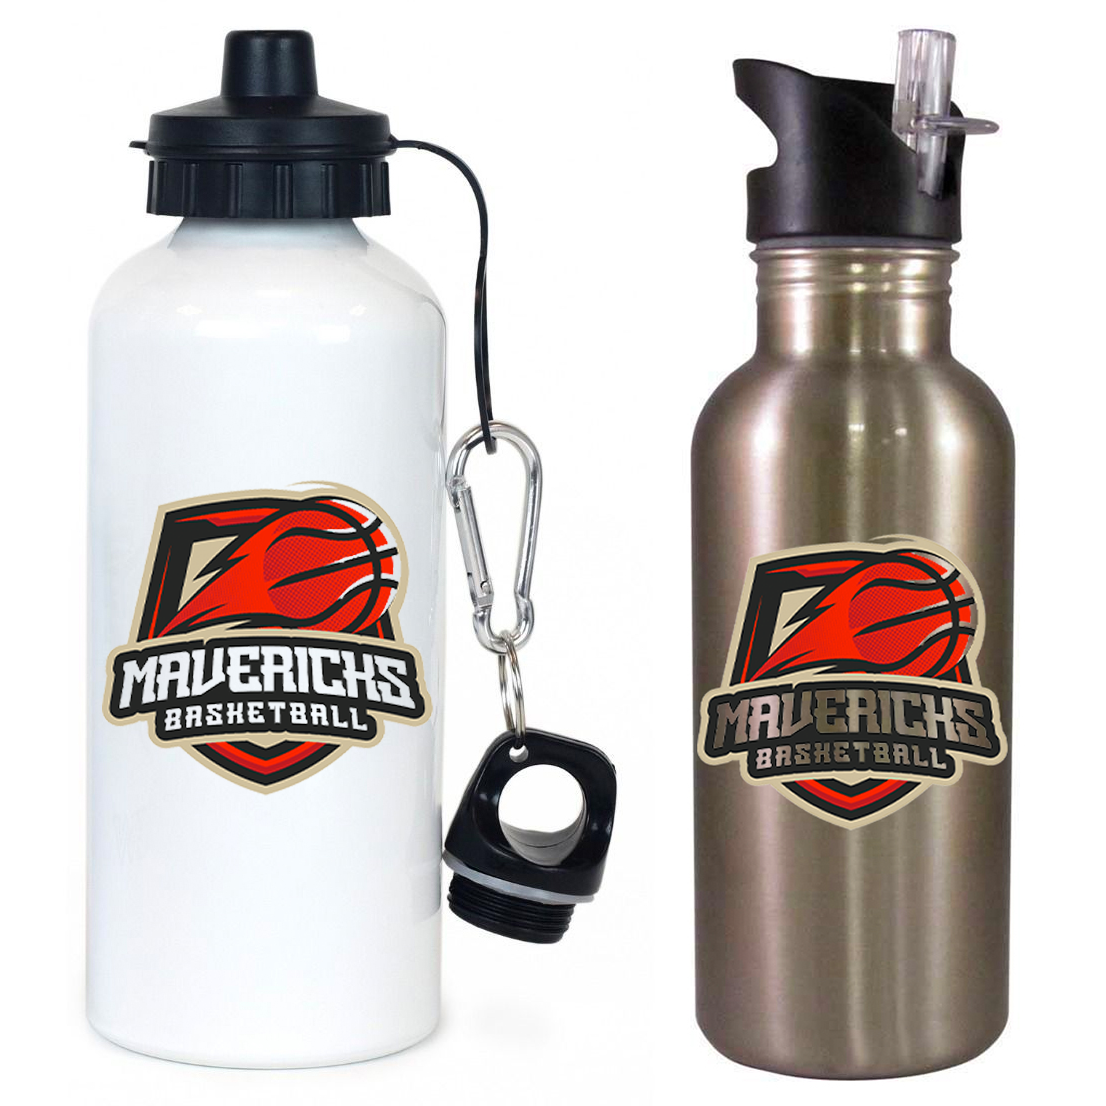 Mavericks Basketball Team Water Bottle